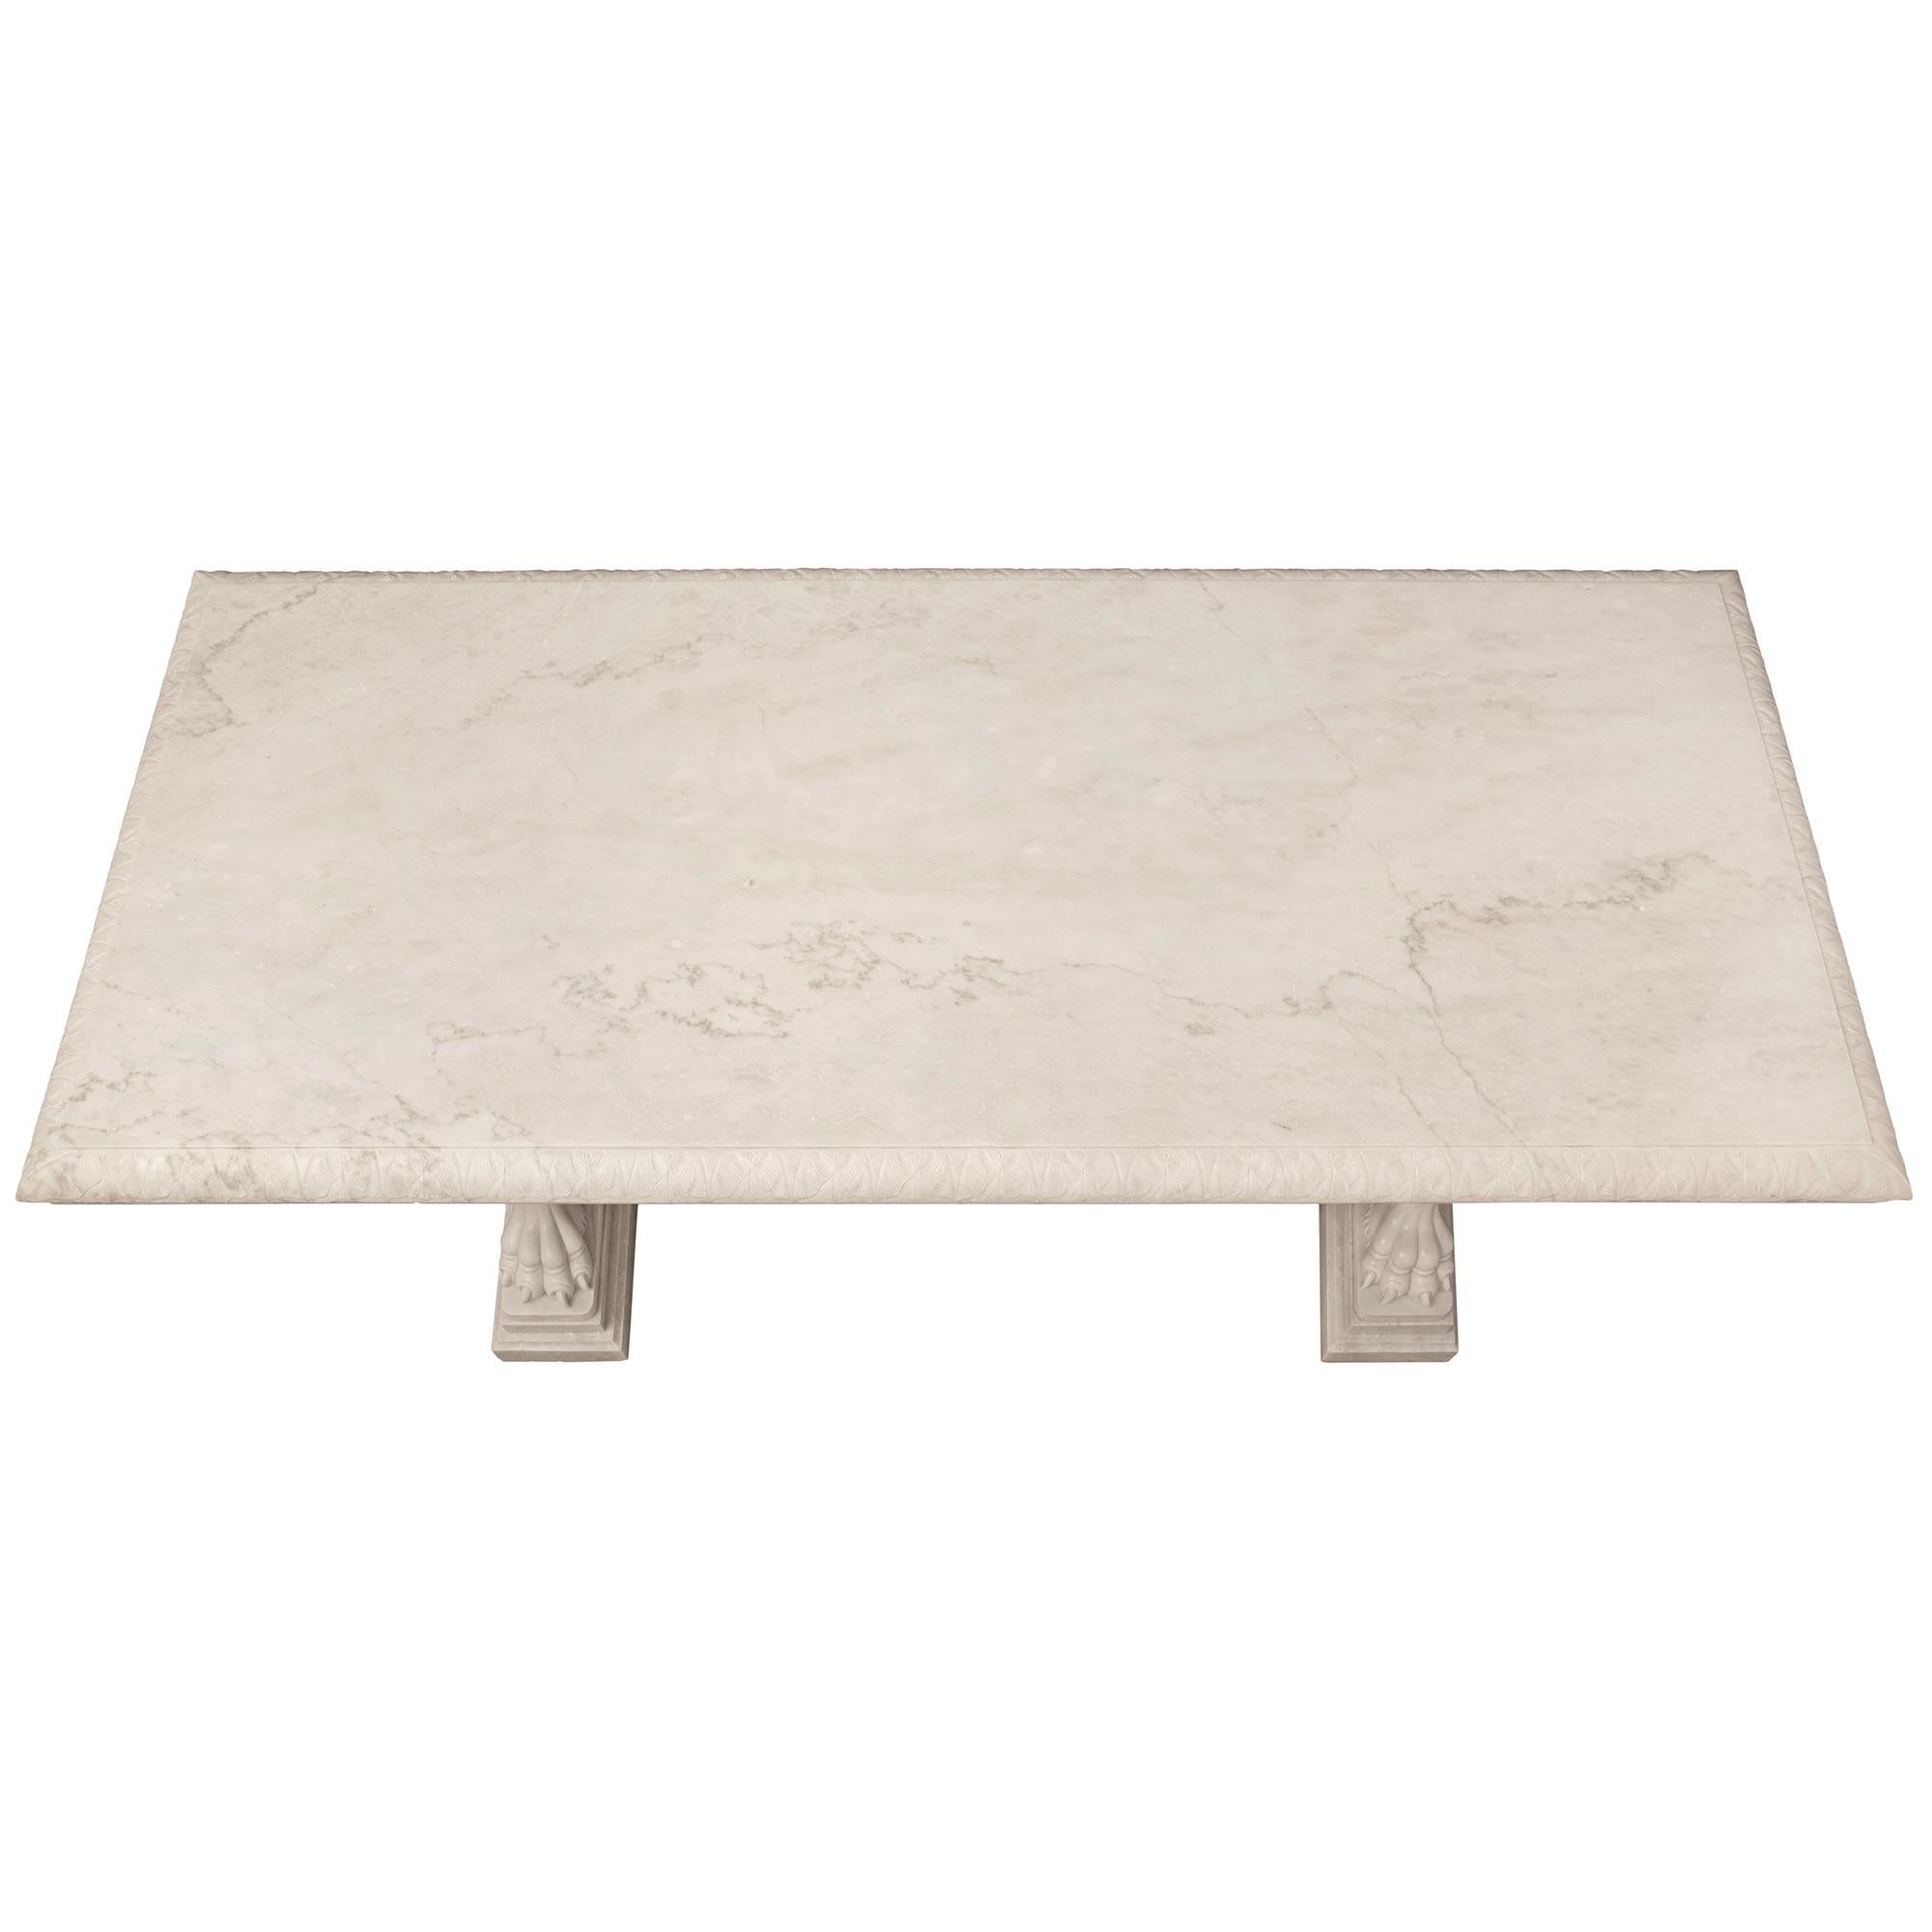 Ein spektakulärer und beeindruckender italienischer neoklassizistischer Tisch aus weißem Carrara-Marmor aus dem 19. Der monumentale, rechteckige Tisch wird von atemberaubenden, detailliert ausgearbeiteten Stützen getragen, die jeweils einen fein